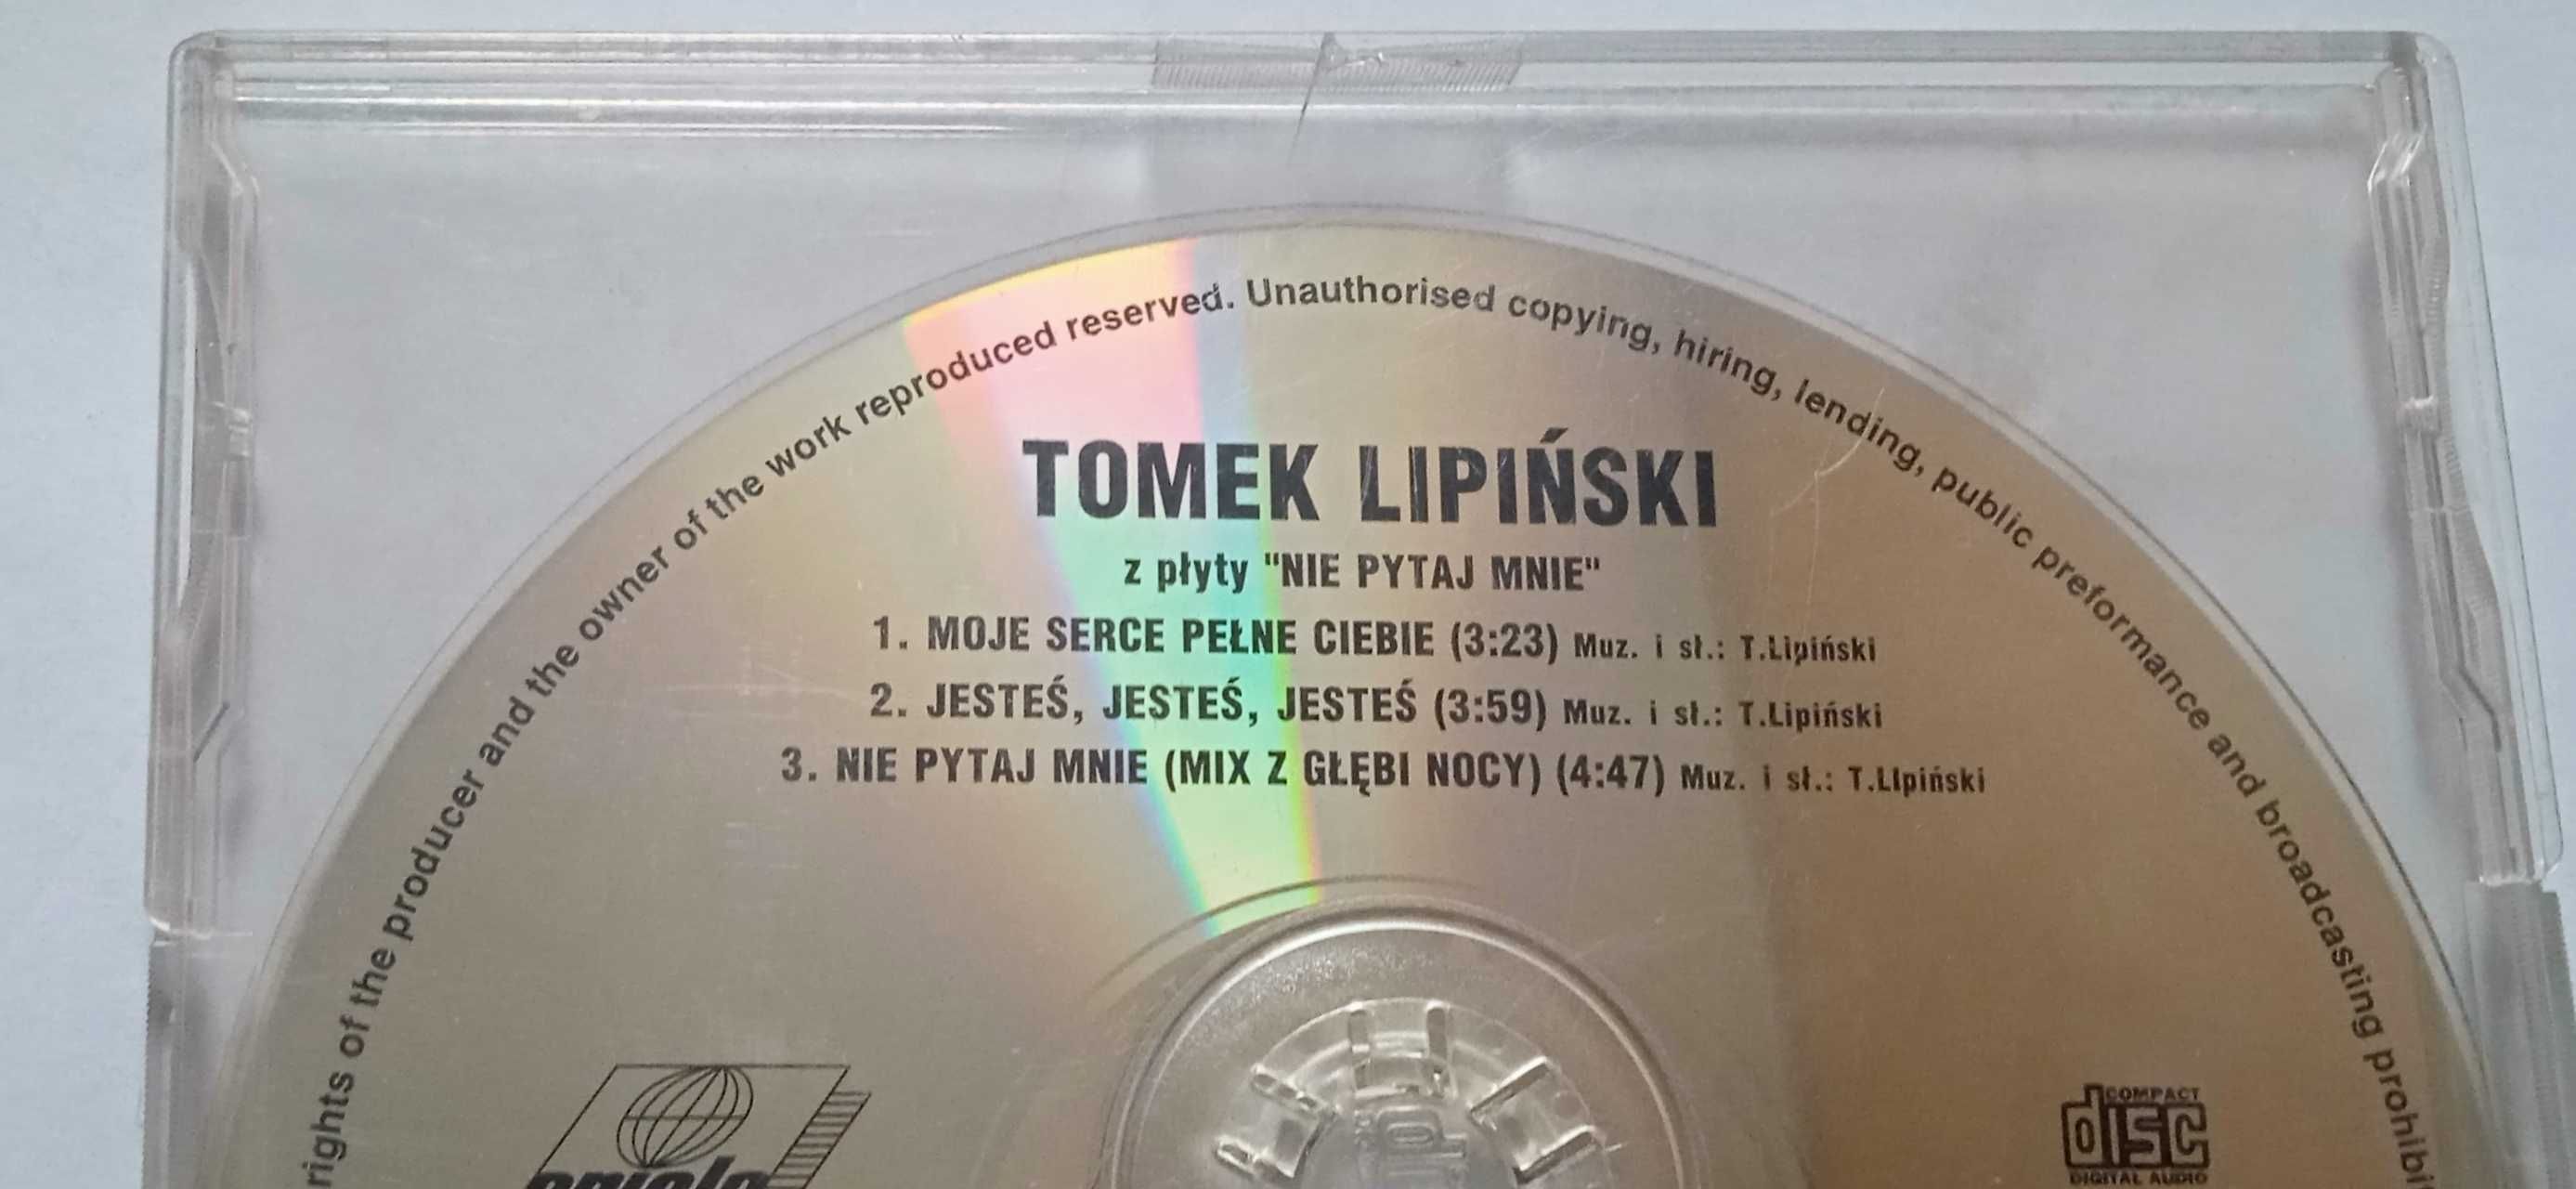 singiel CD Tomek Lipiński"Nie pytaj mnie"/Tamerlane